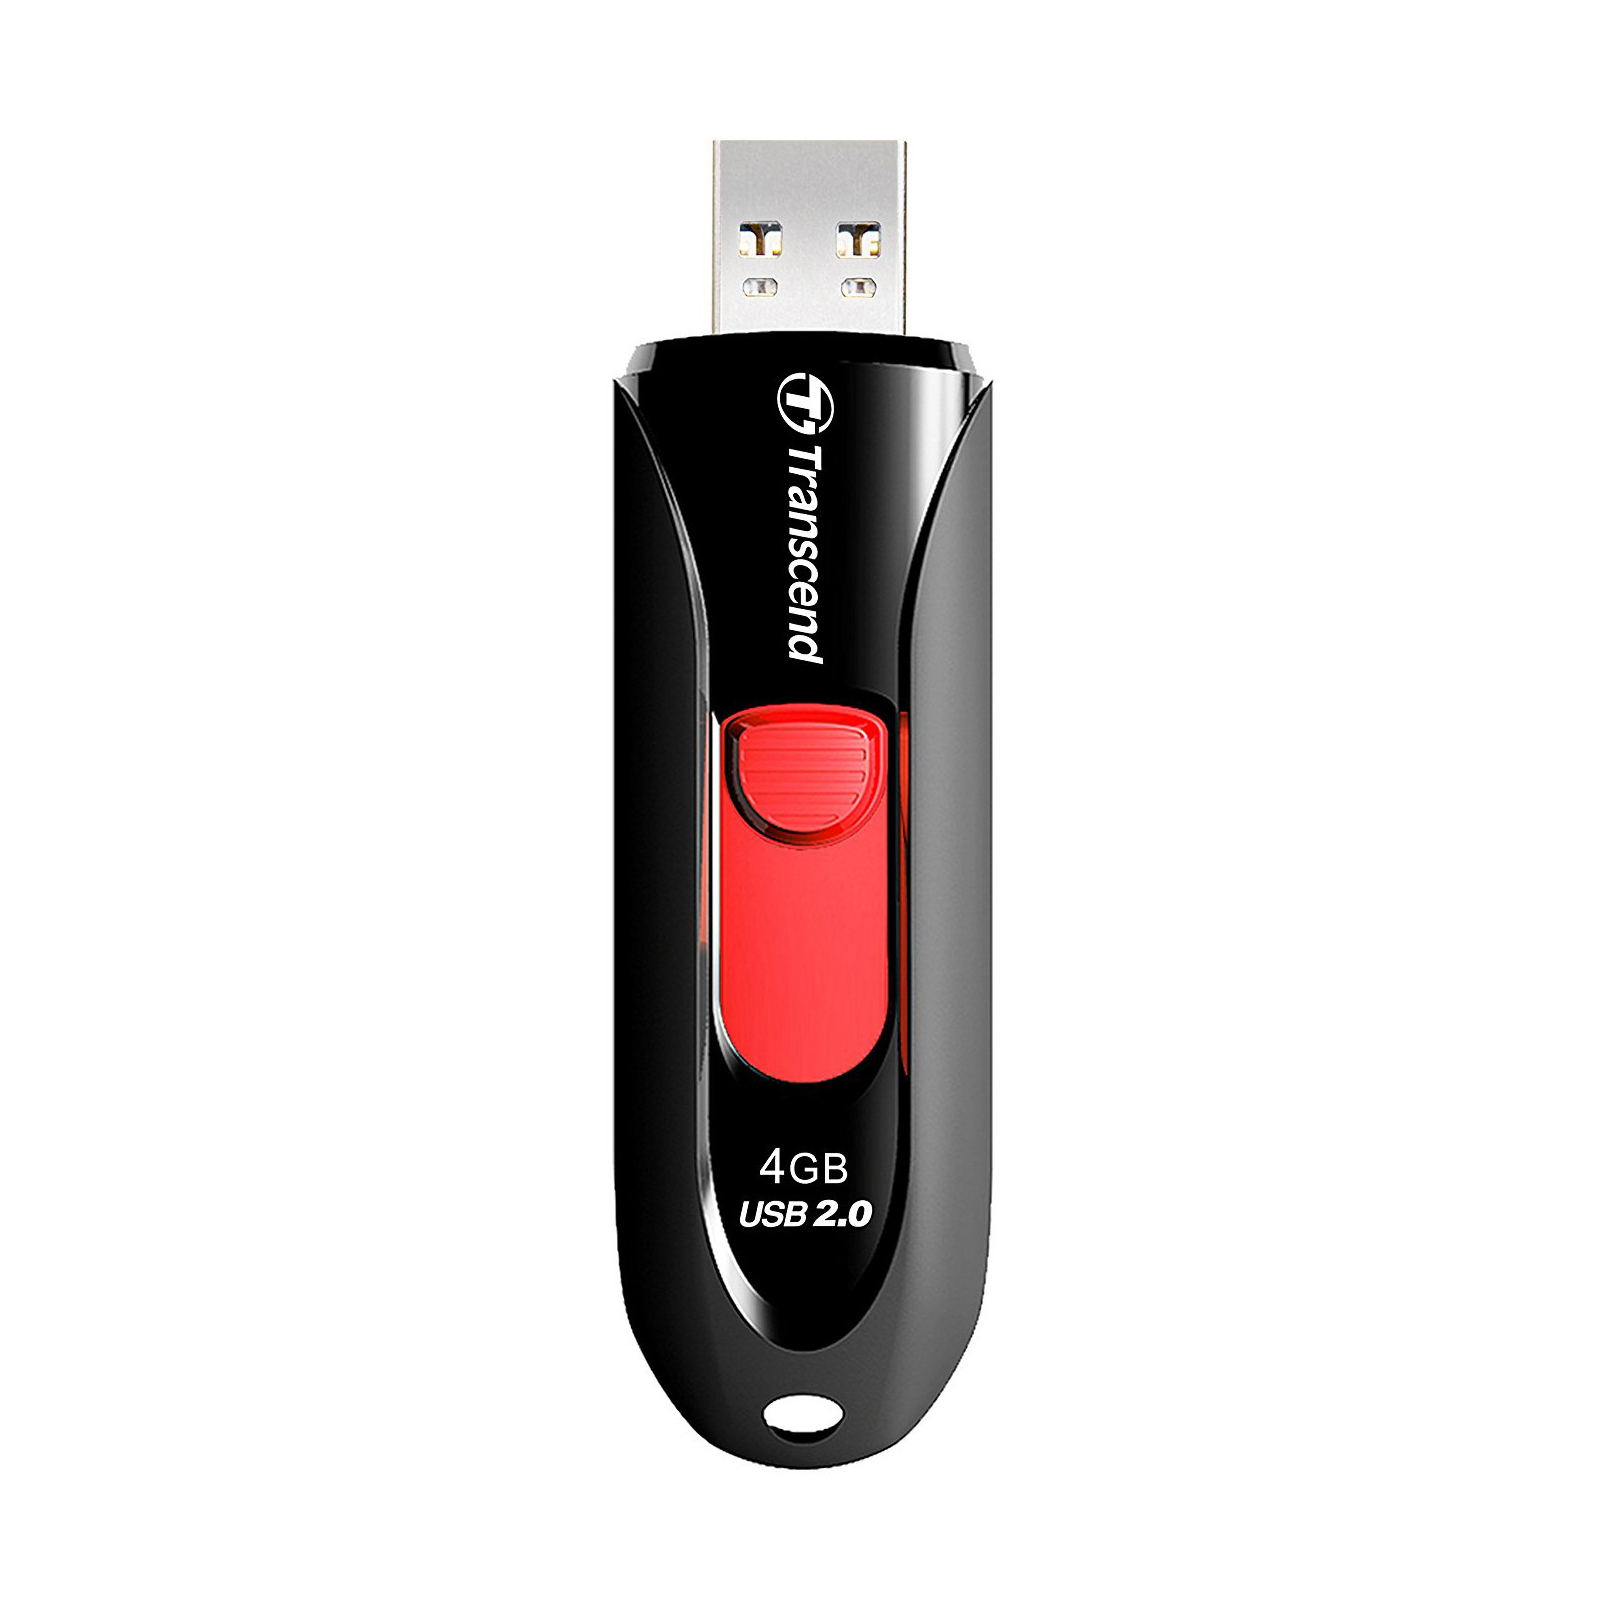 USB флеш накопитель Transcend 4GB JetFlash 590 Black USB 2.0 (TS4GJF590K) изображение 2